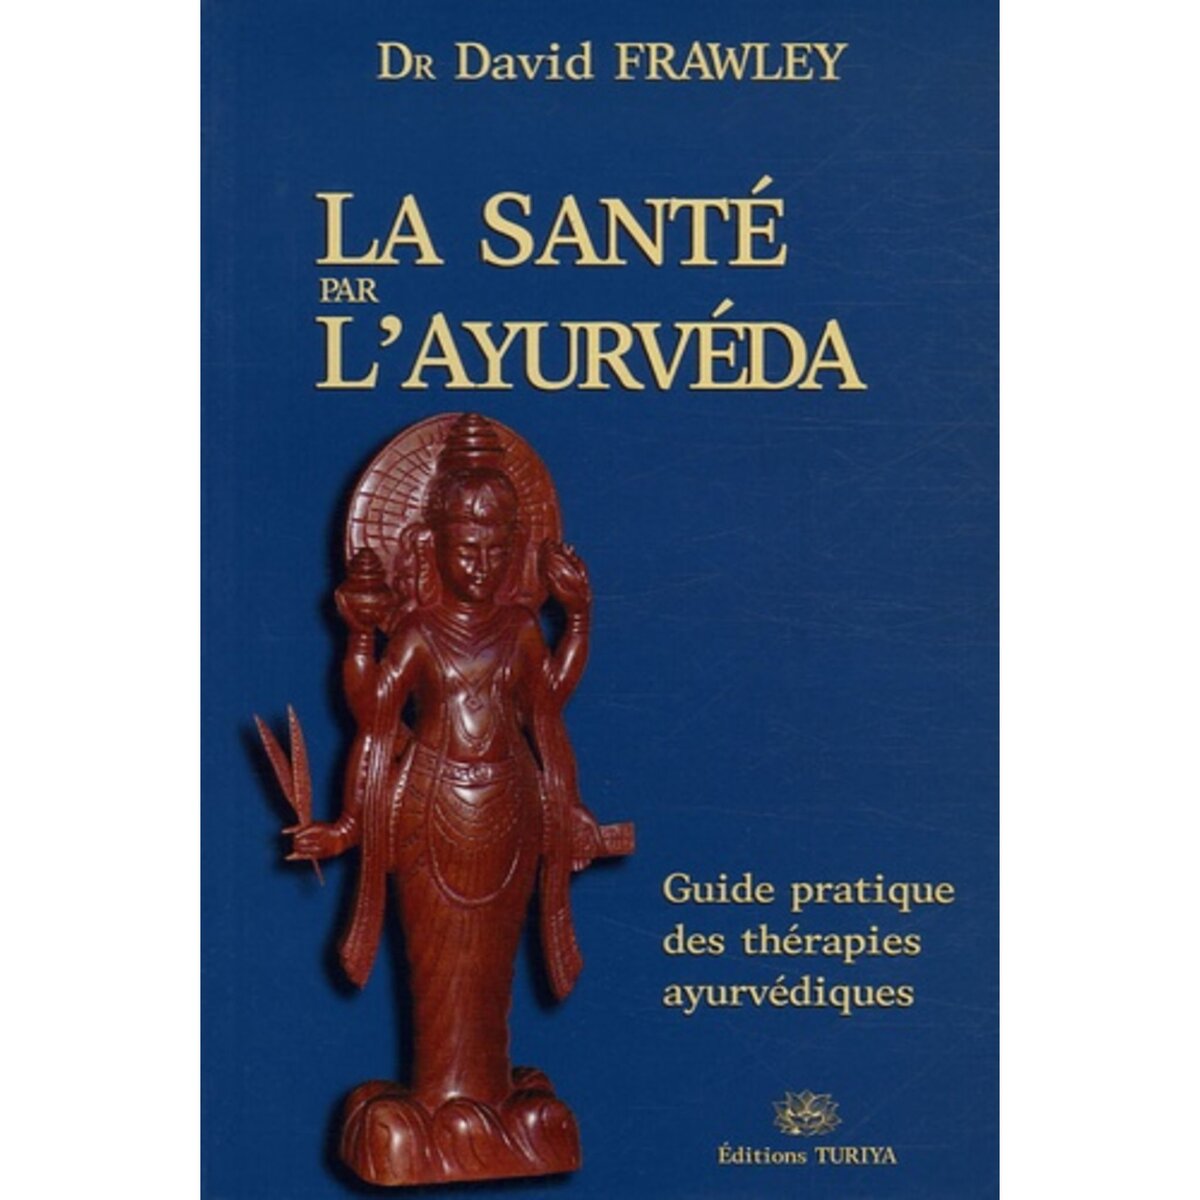  LA SANTE PAR L'AYURVEDA. GUIDE PRATIQUE DES THERAPIES AYURVEDIQUES, Frawley David